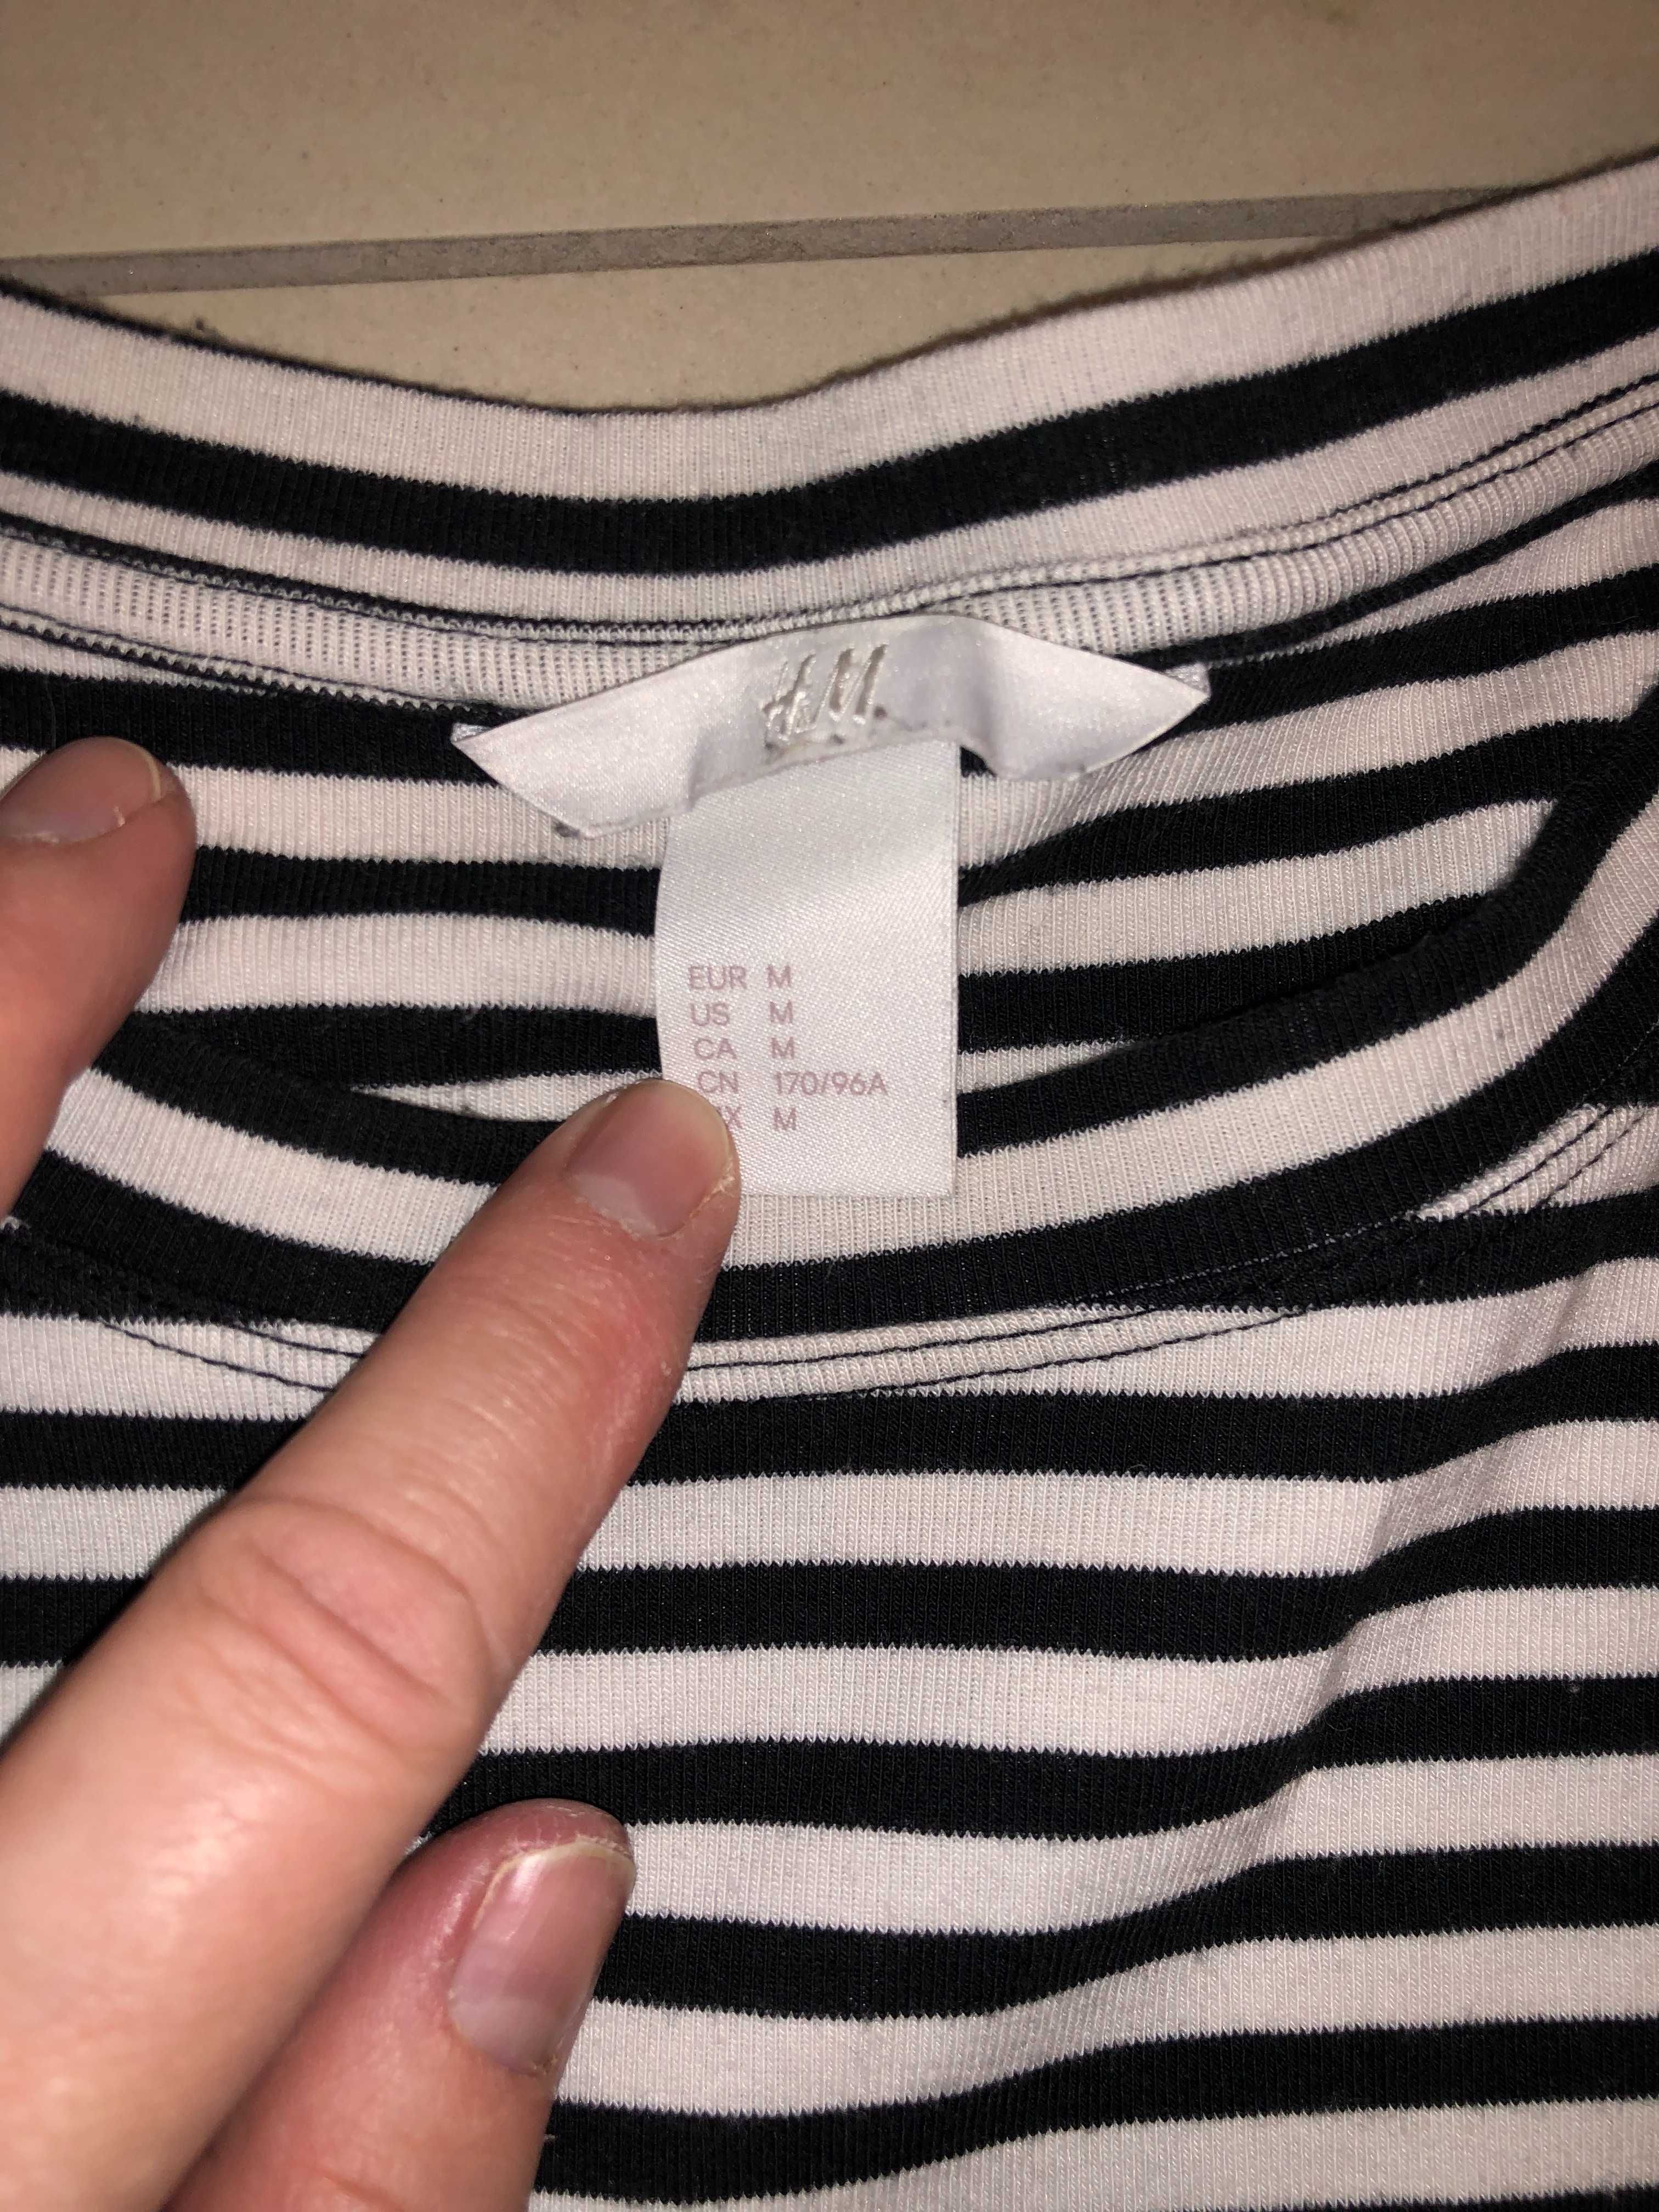 Bluza H&M, noua fara eticheta, marimea M